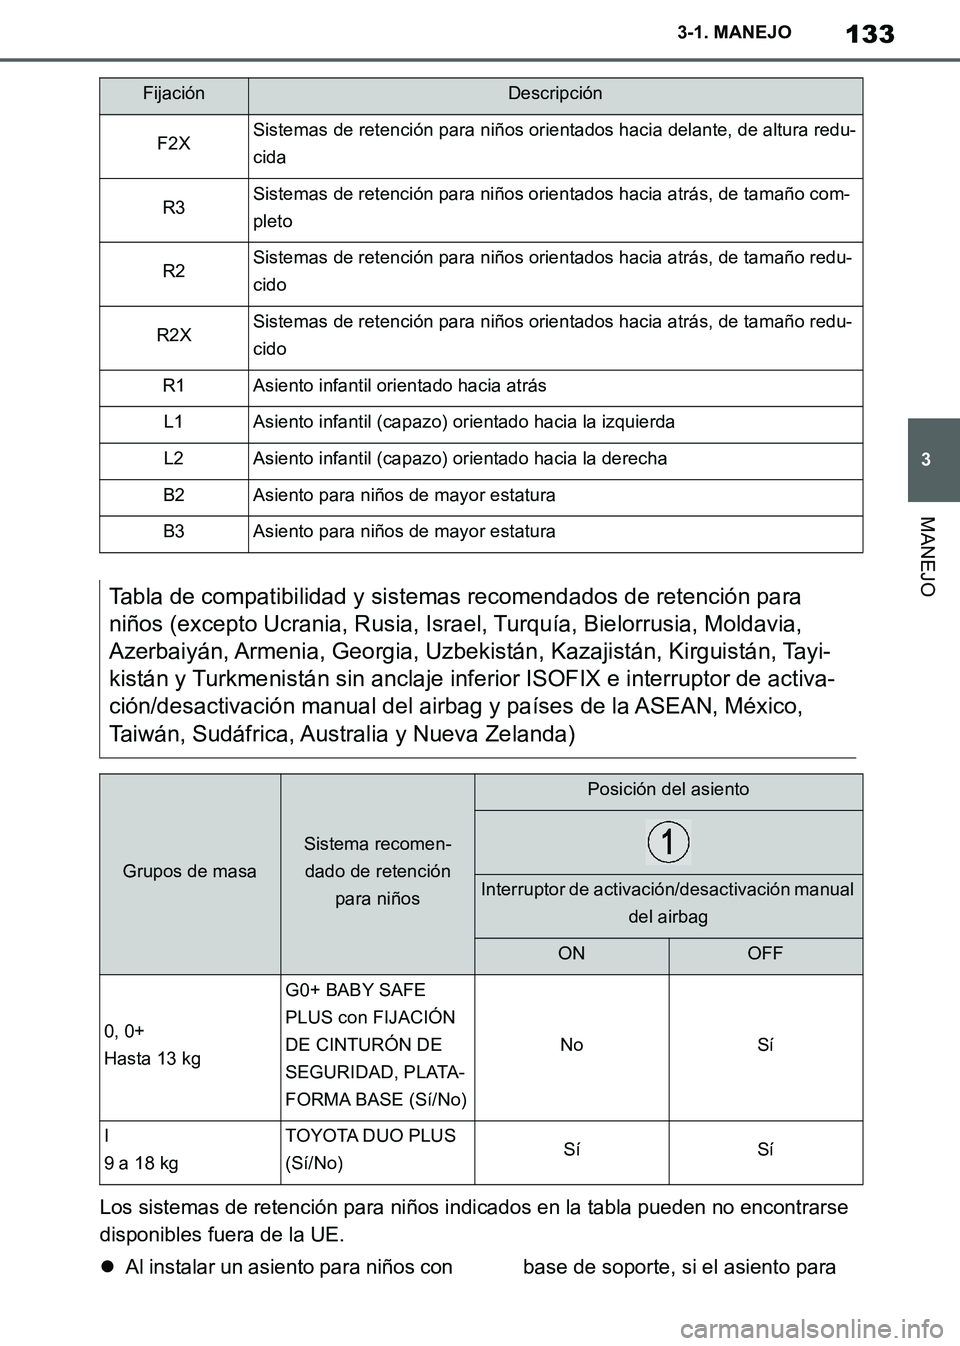 TOYOTA SUPRA 2019  Manuale de Empleo (in Spanish) 133
3
Supra Owners Manual_ES
3-1. MANEJO
MANEJO
Los sistemas de retención para niños indicados en la tabla pueden no encontrarse 
disponibles fuera de la UE.
Al instalar un asiento para niños c